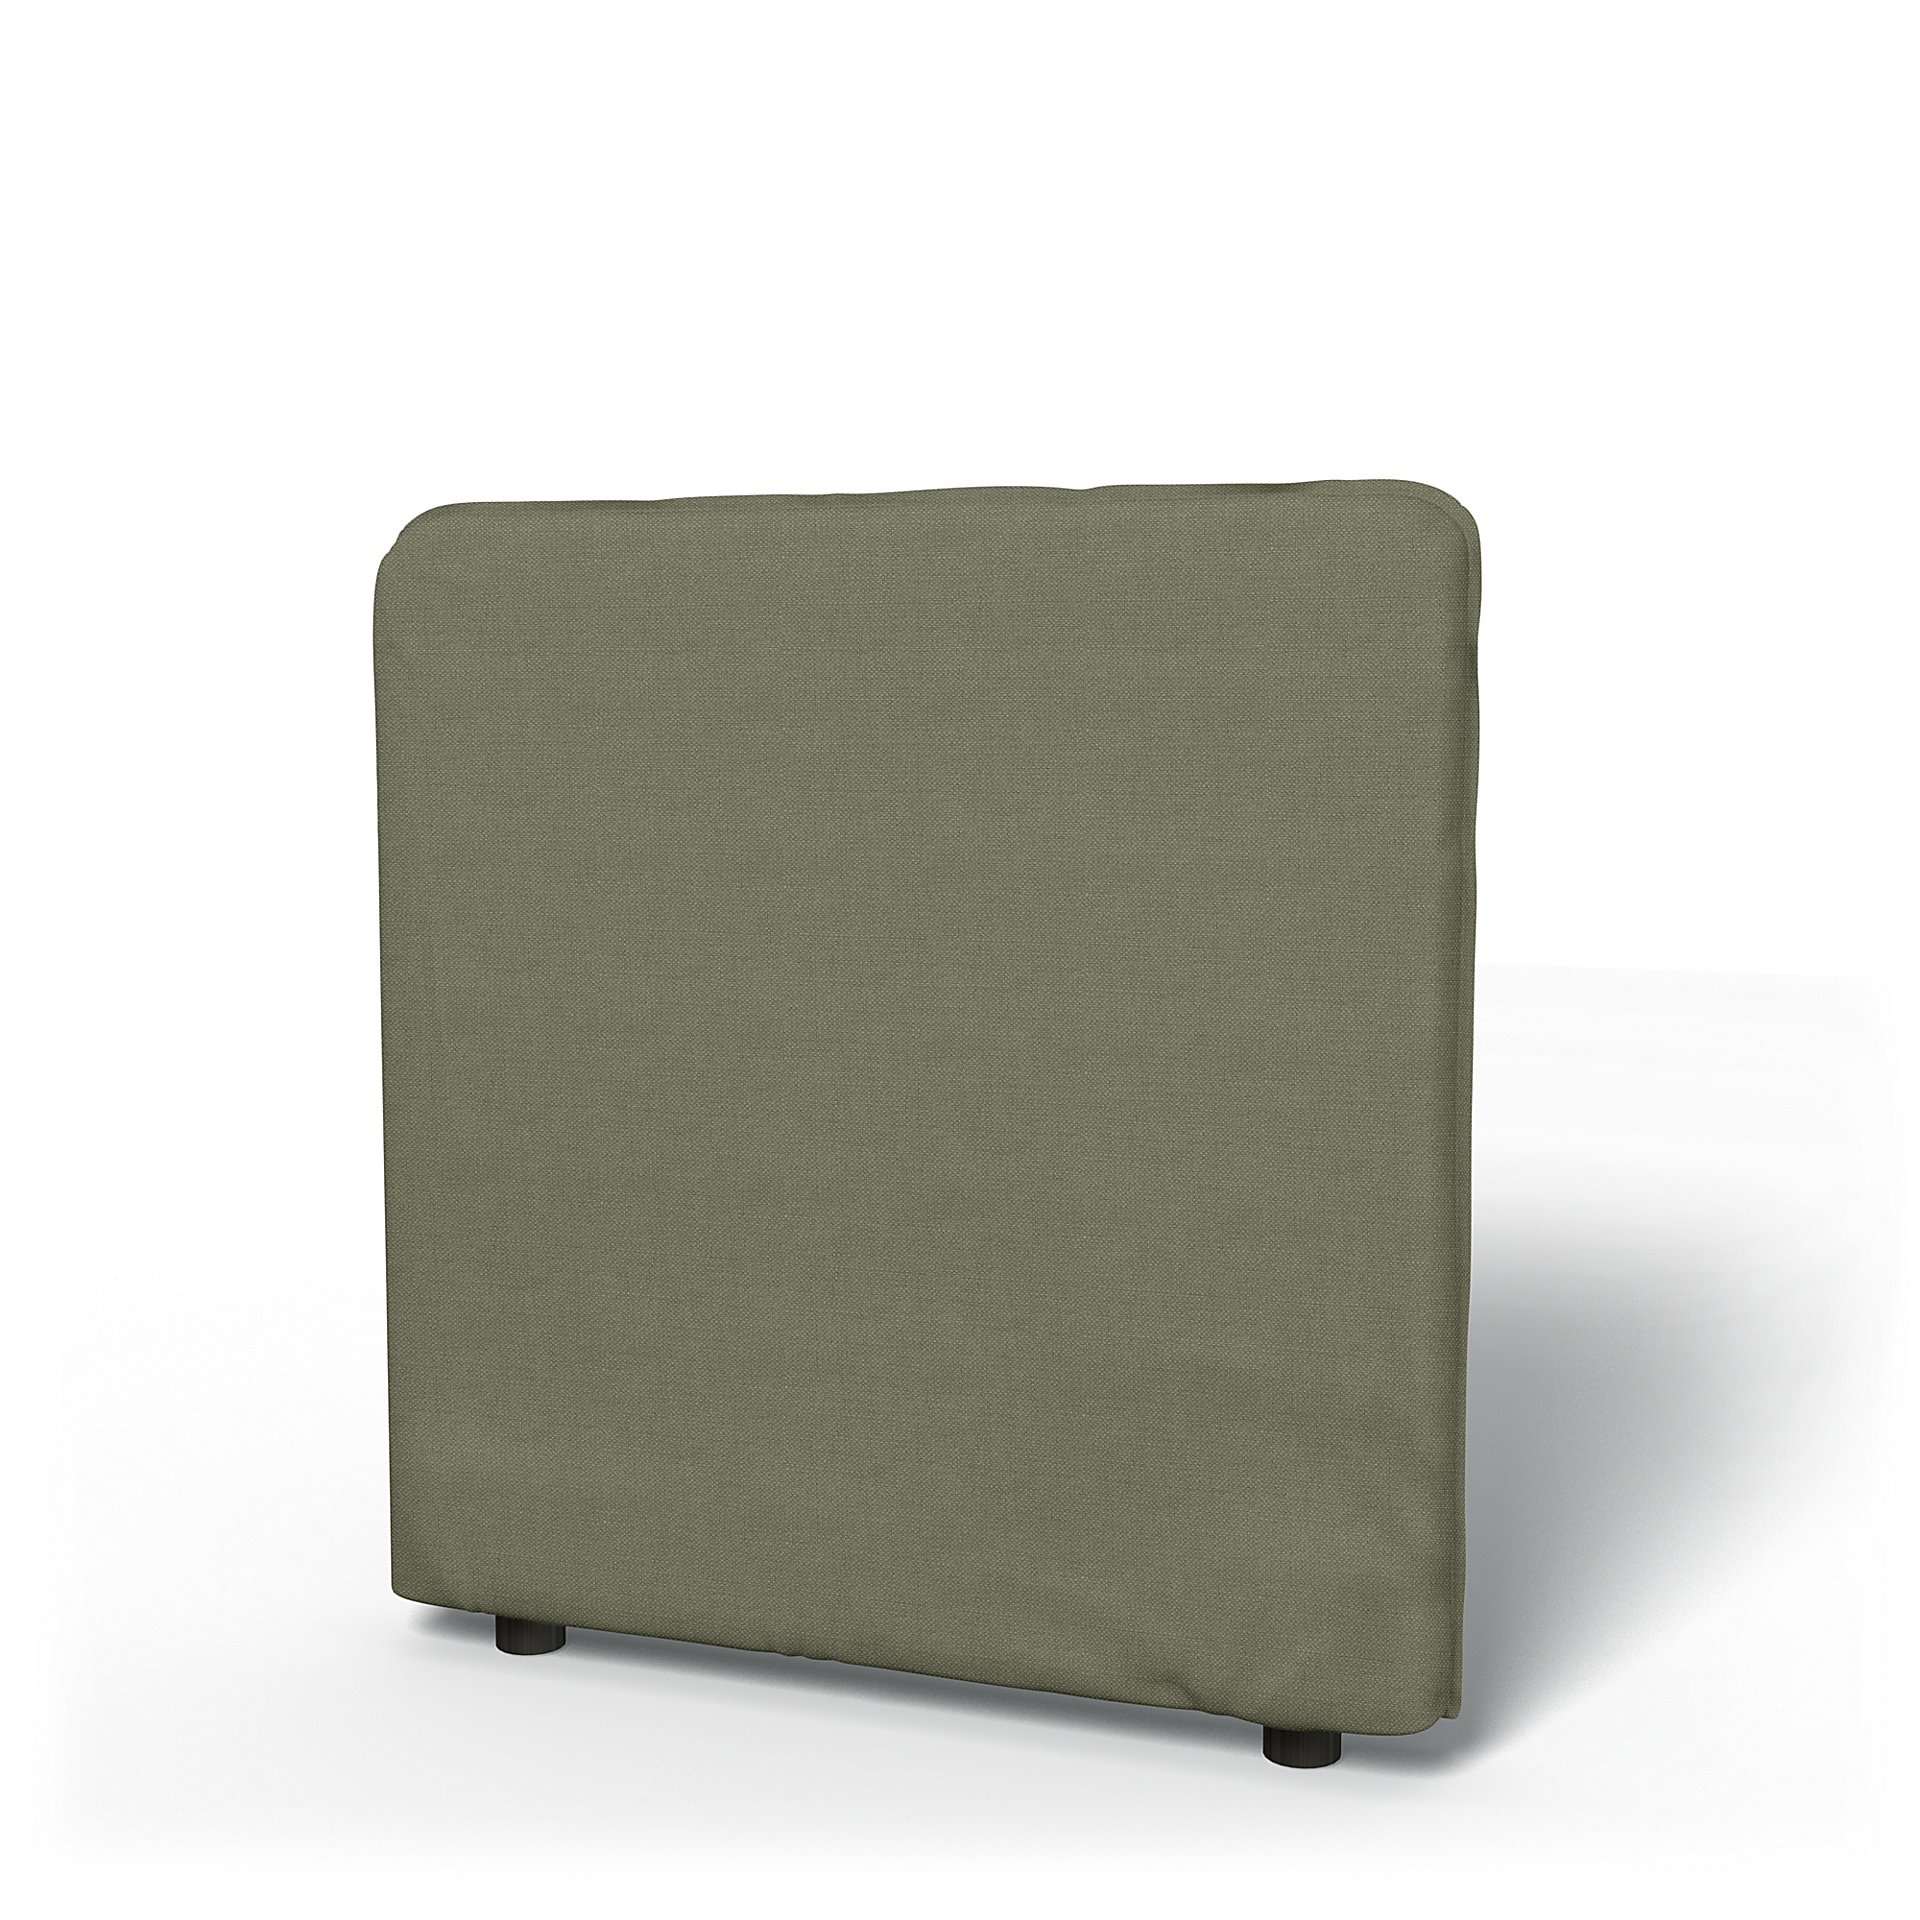 IKEA - Vallentuna Low Backrest Cover 80x80cm 32x32in, Sage, Linen - Bemz